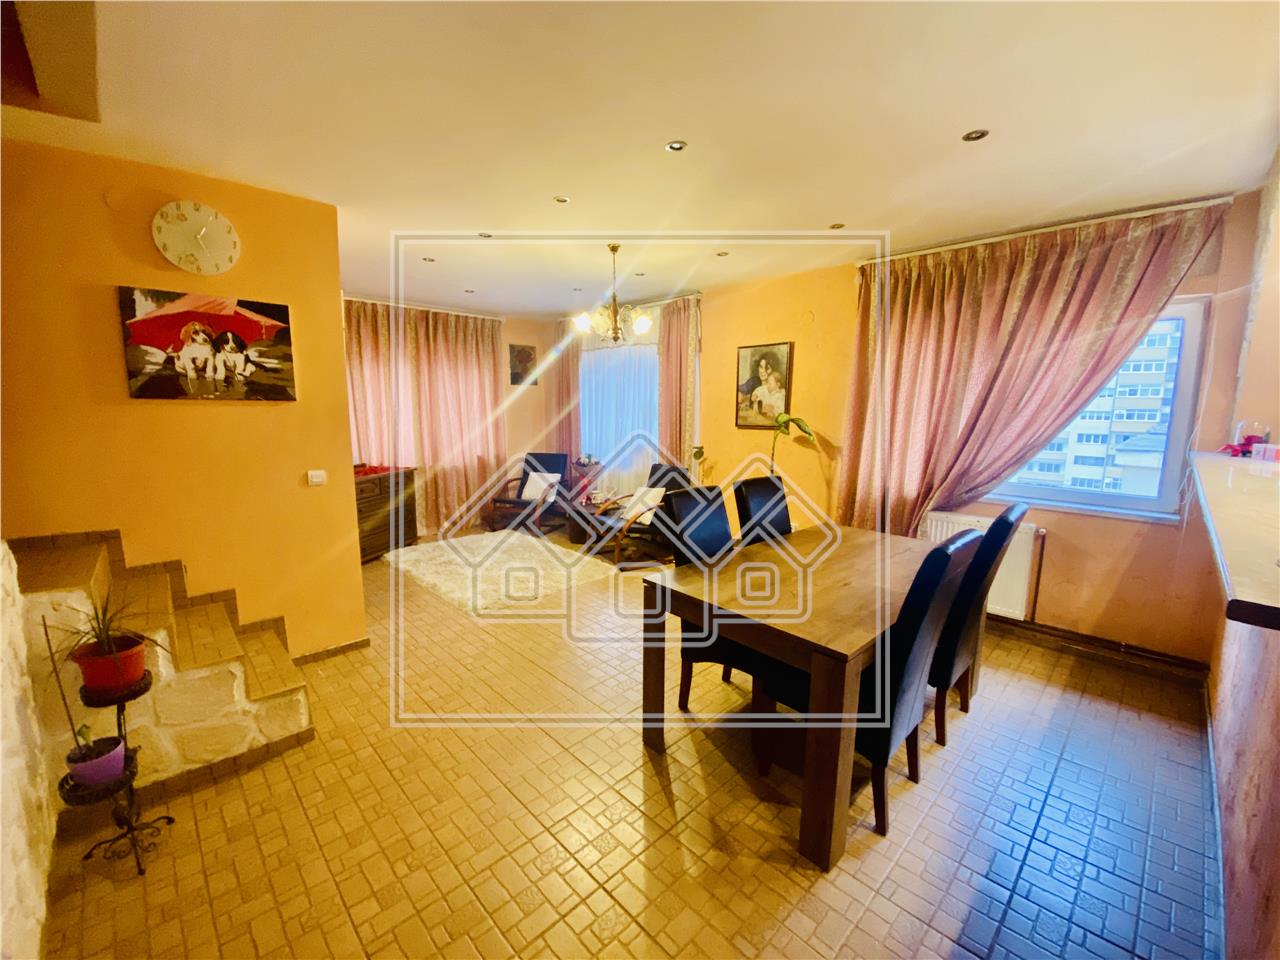 Apartment for sale in Sibiu - 3 rooms - Nicolae Iorga area